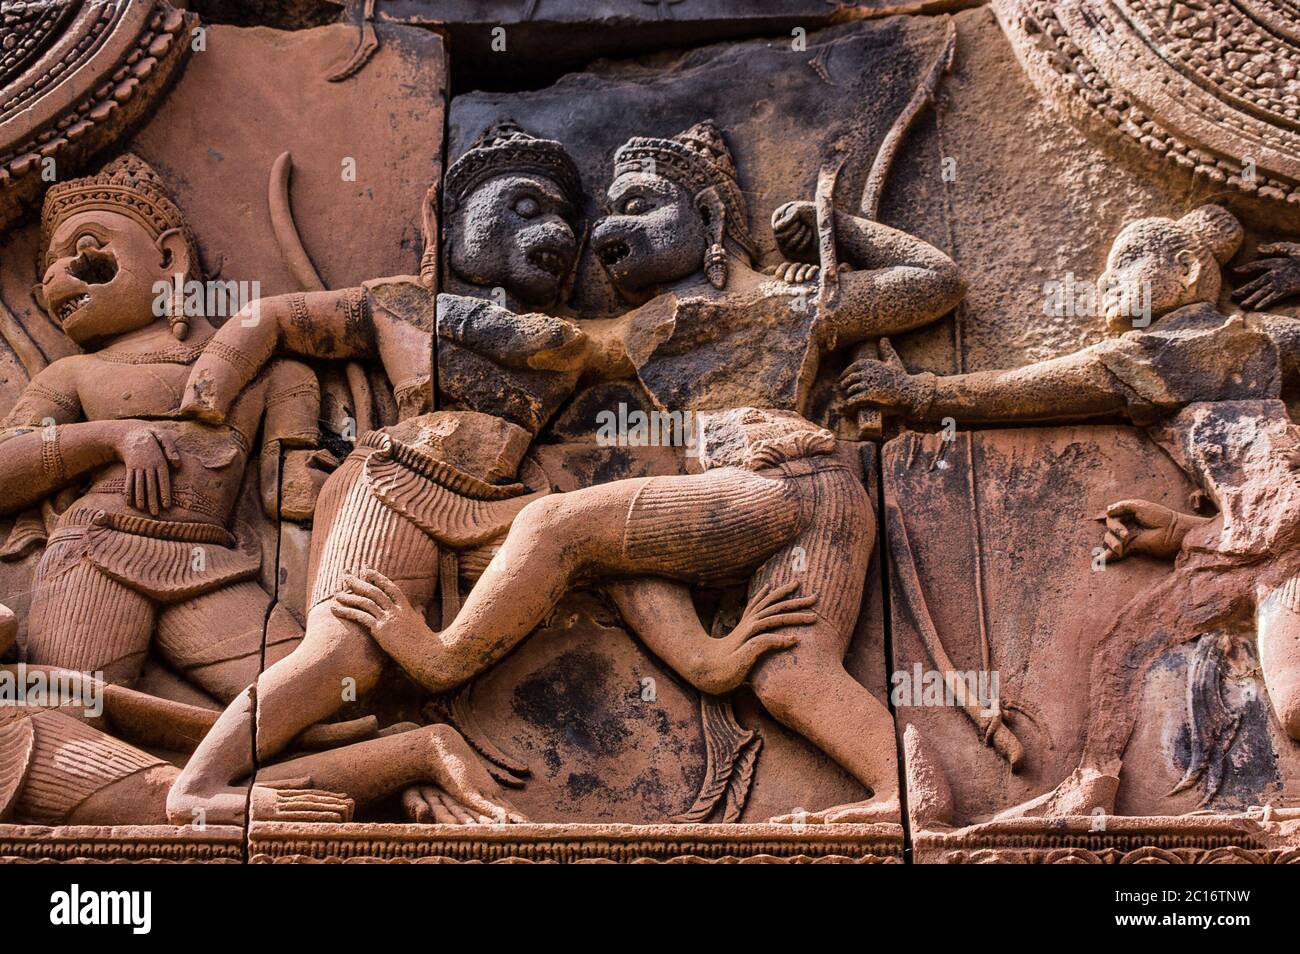 Antica scultura Khmer del combattimento tra Sugriva e Valin. L'epica indù Ramayana descrive come Sugriva ha sconfitto il fratello per governare la scimmia Foto Stock